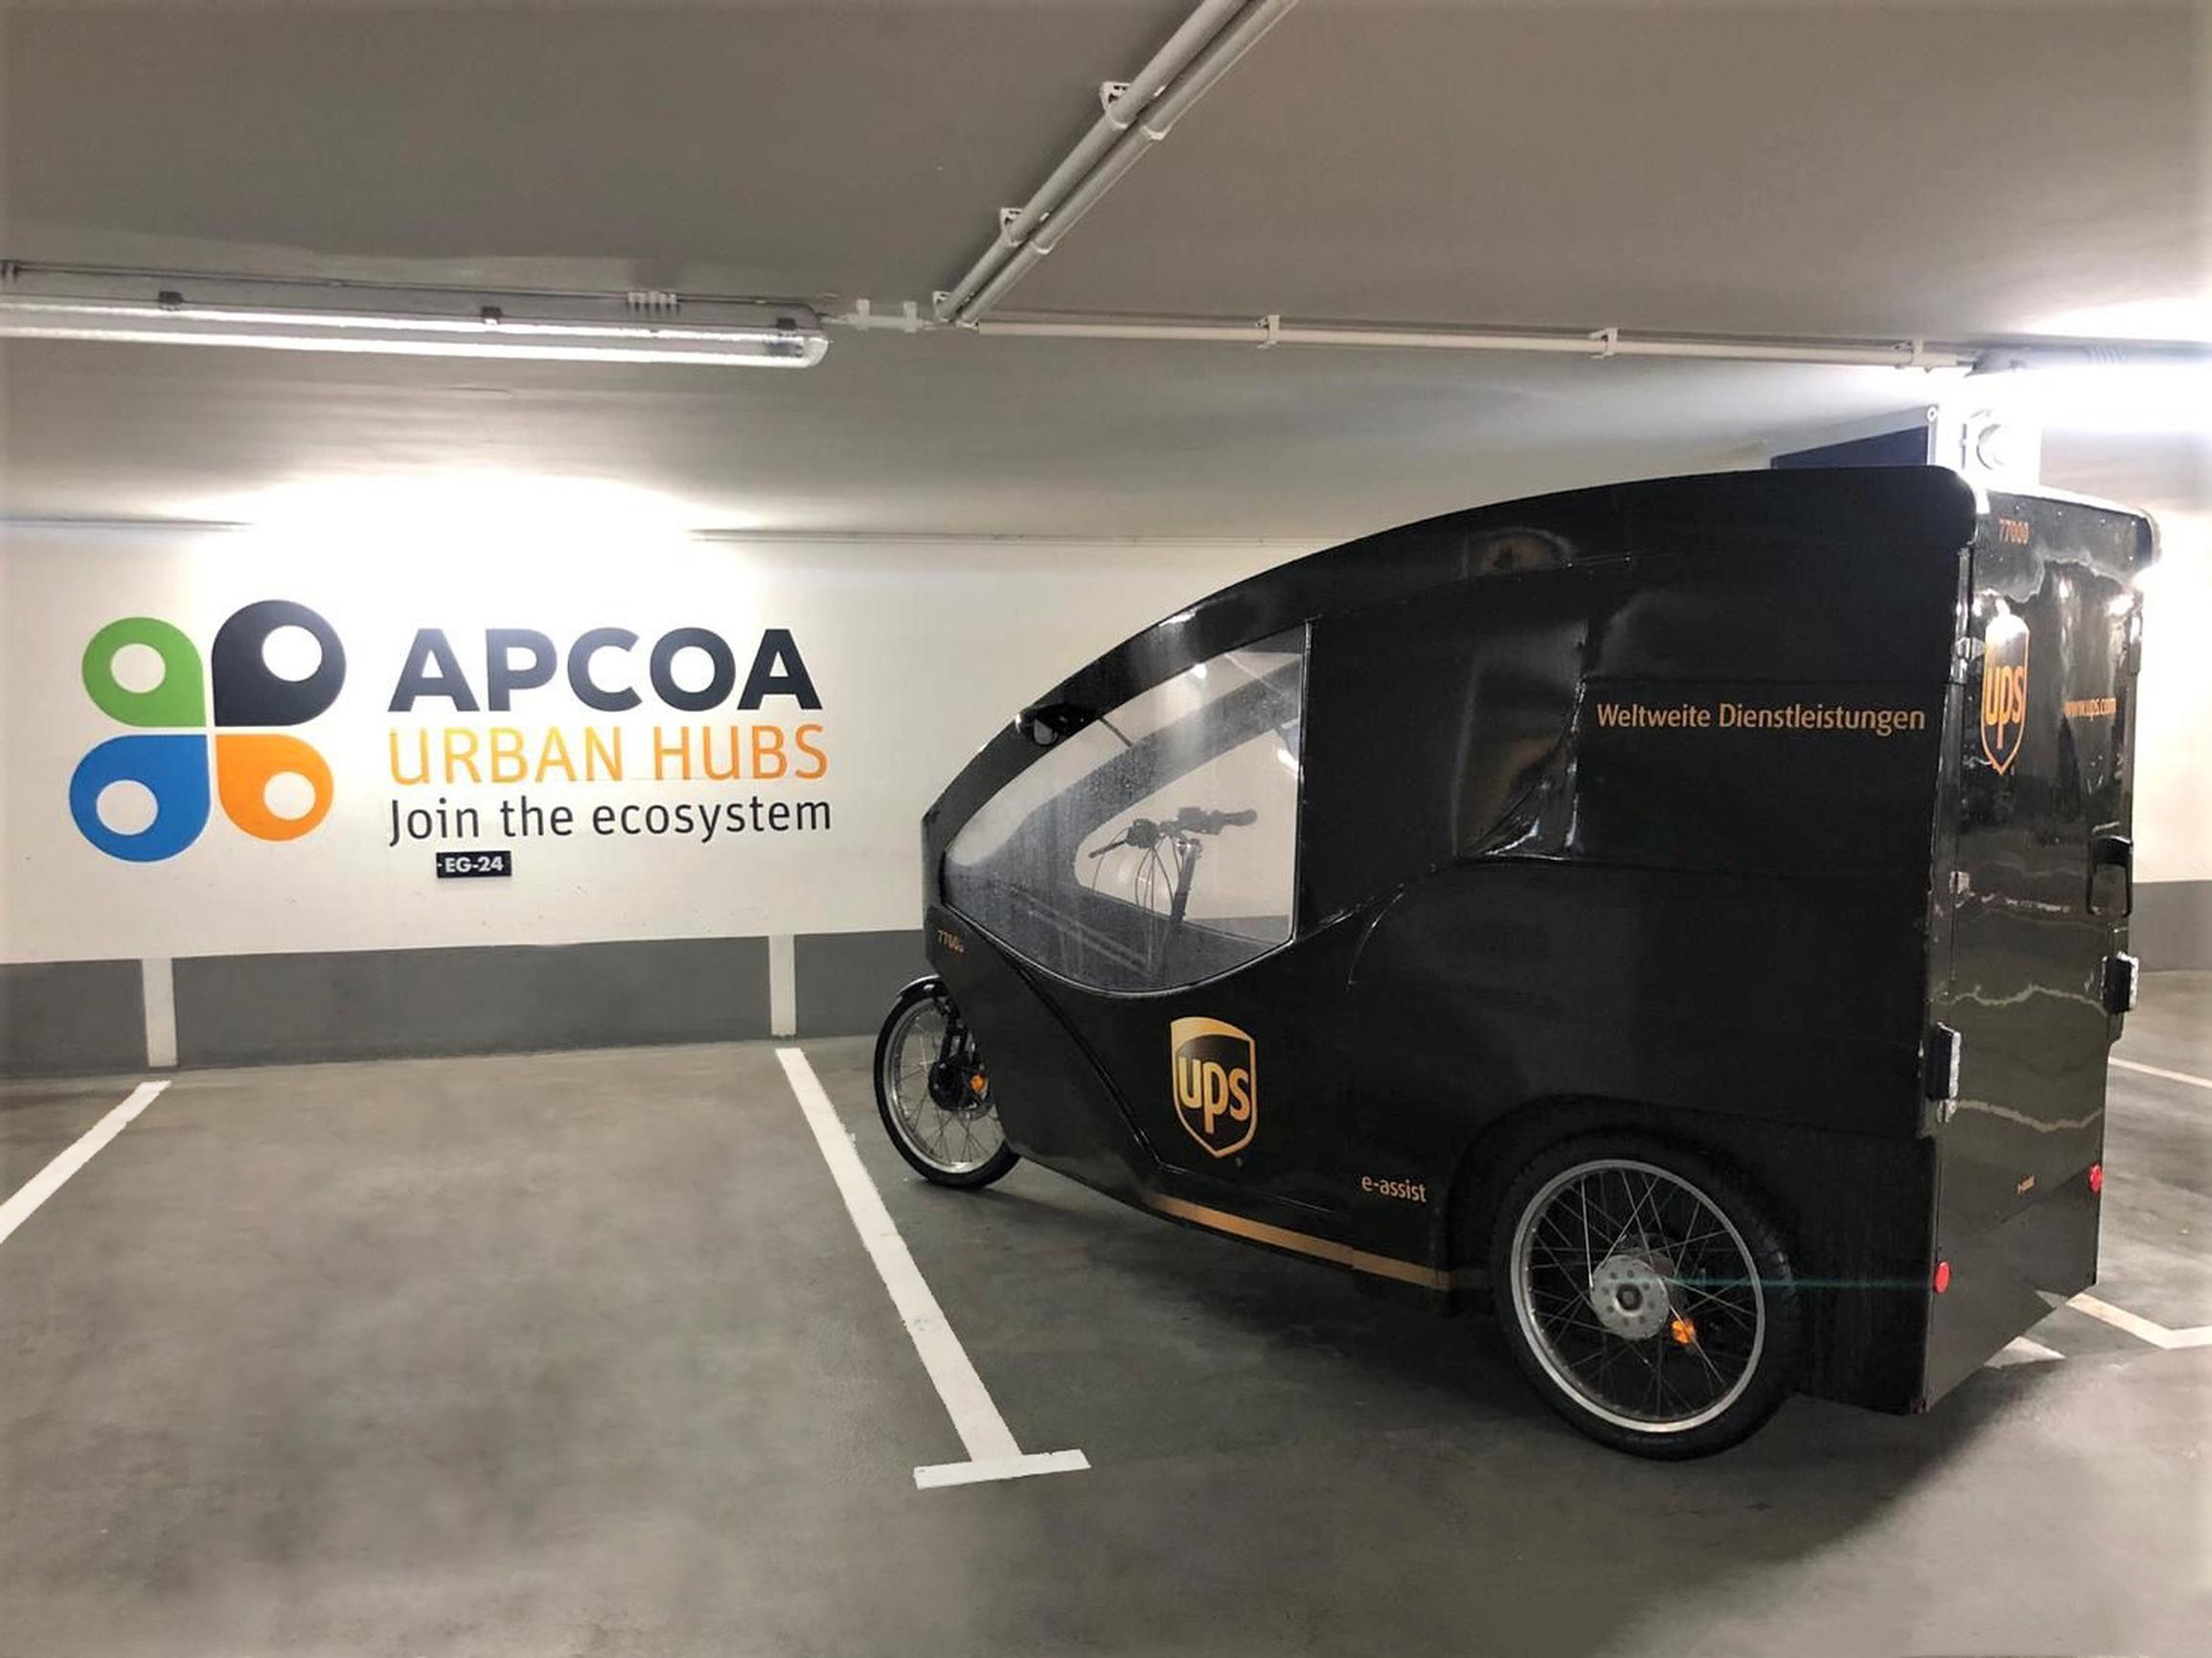 APCOA and UPS form logistics partnership